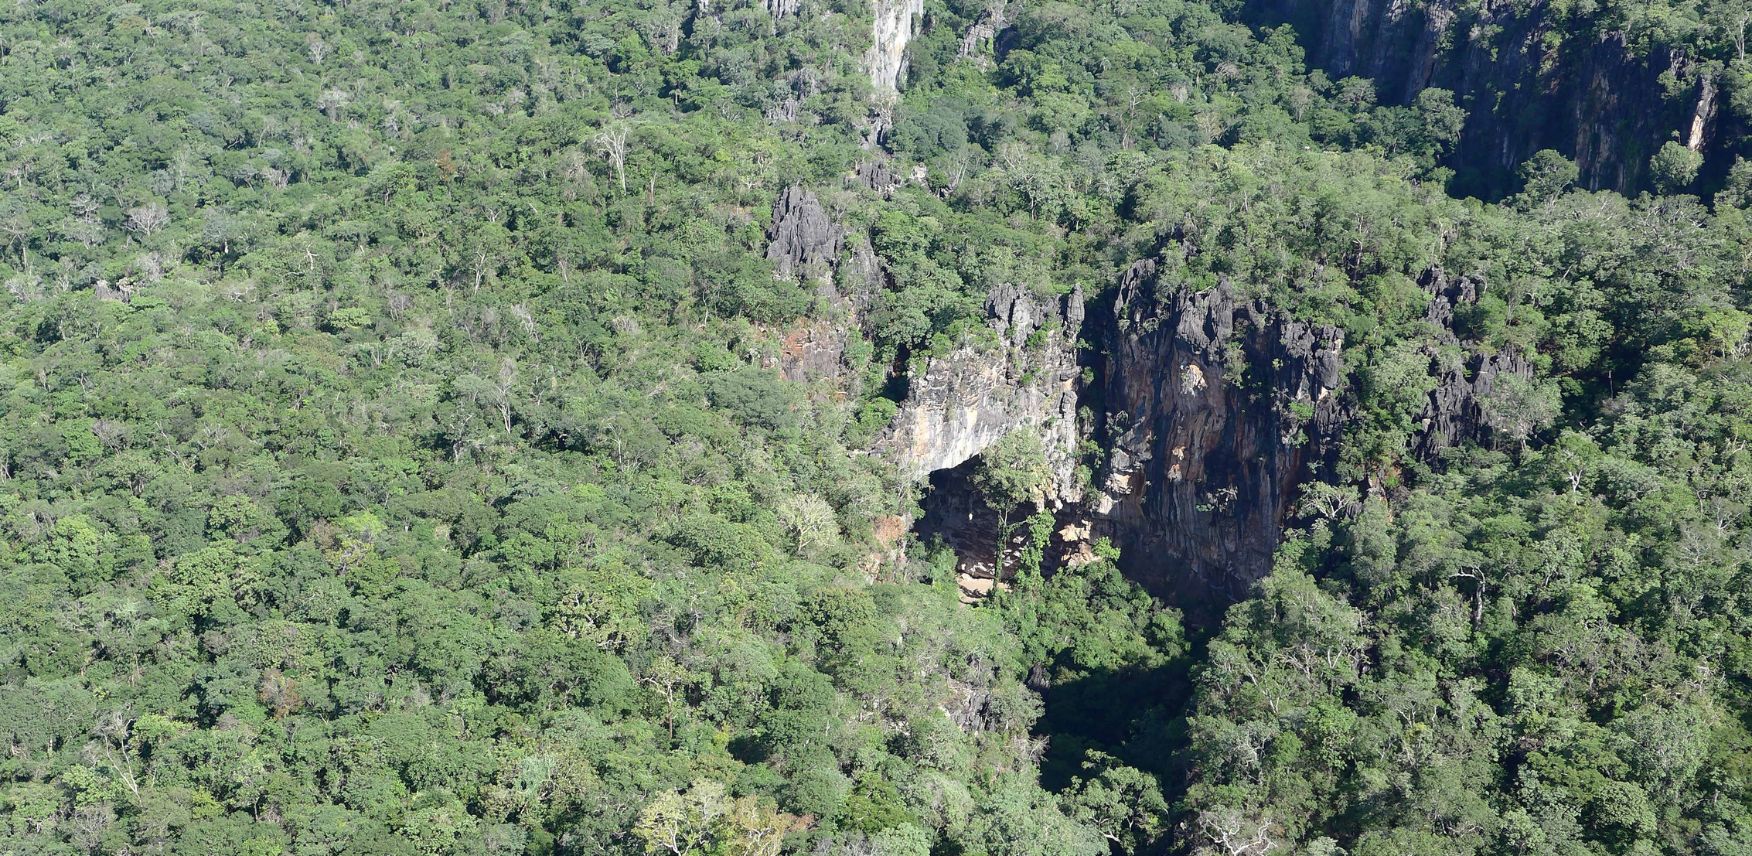 Parque Nacional Cavernas do Peruaçu